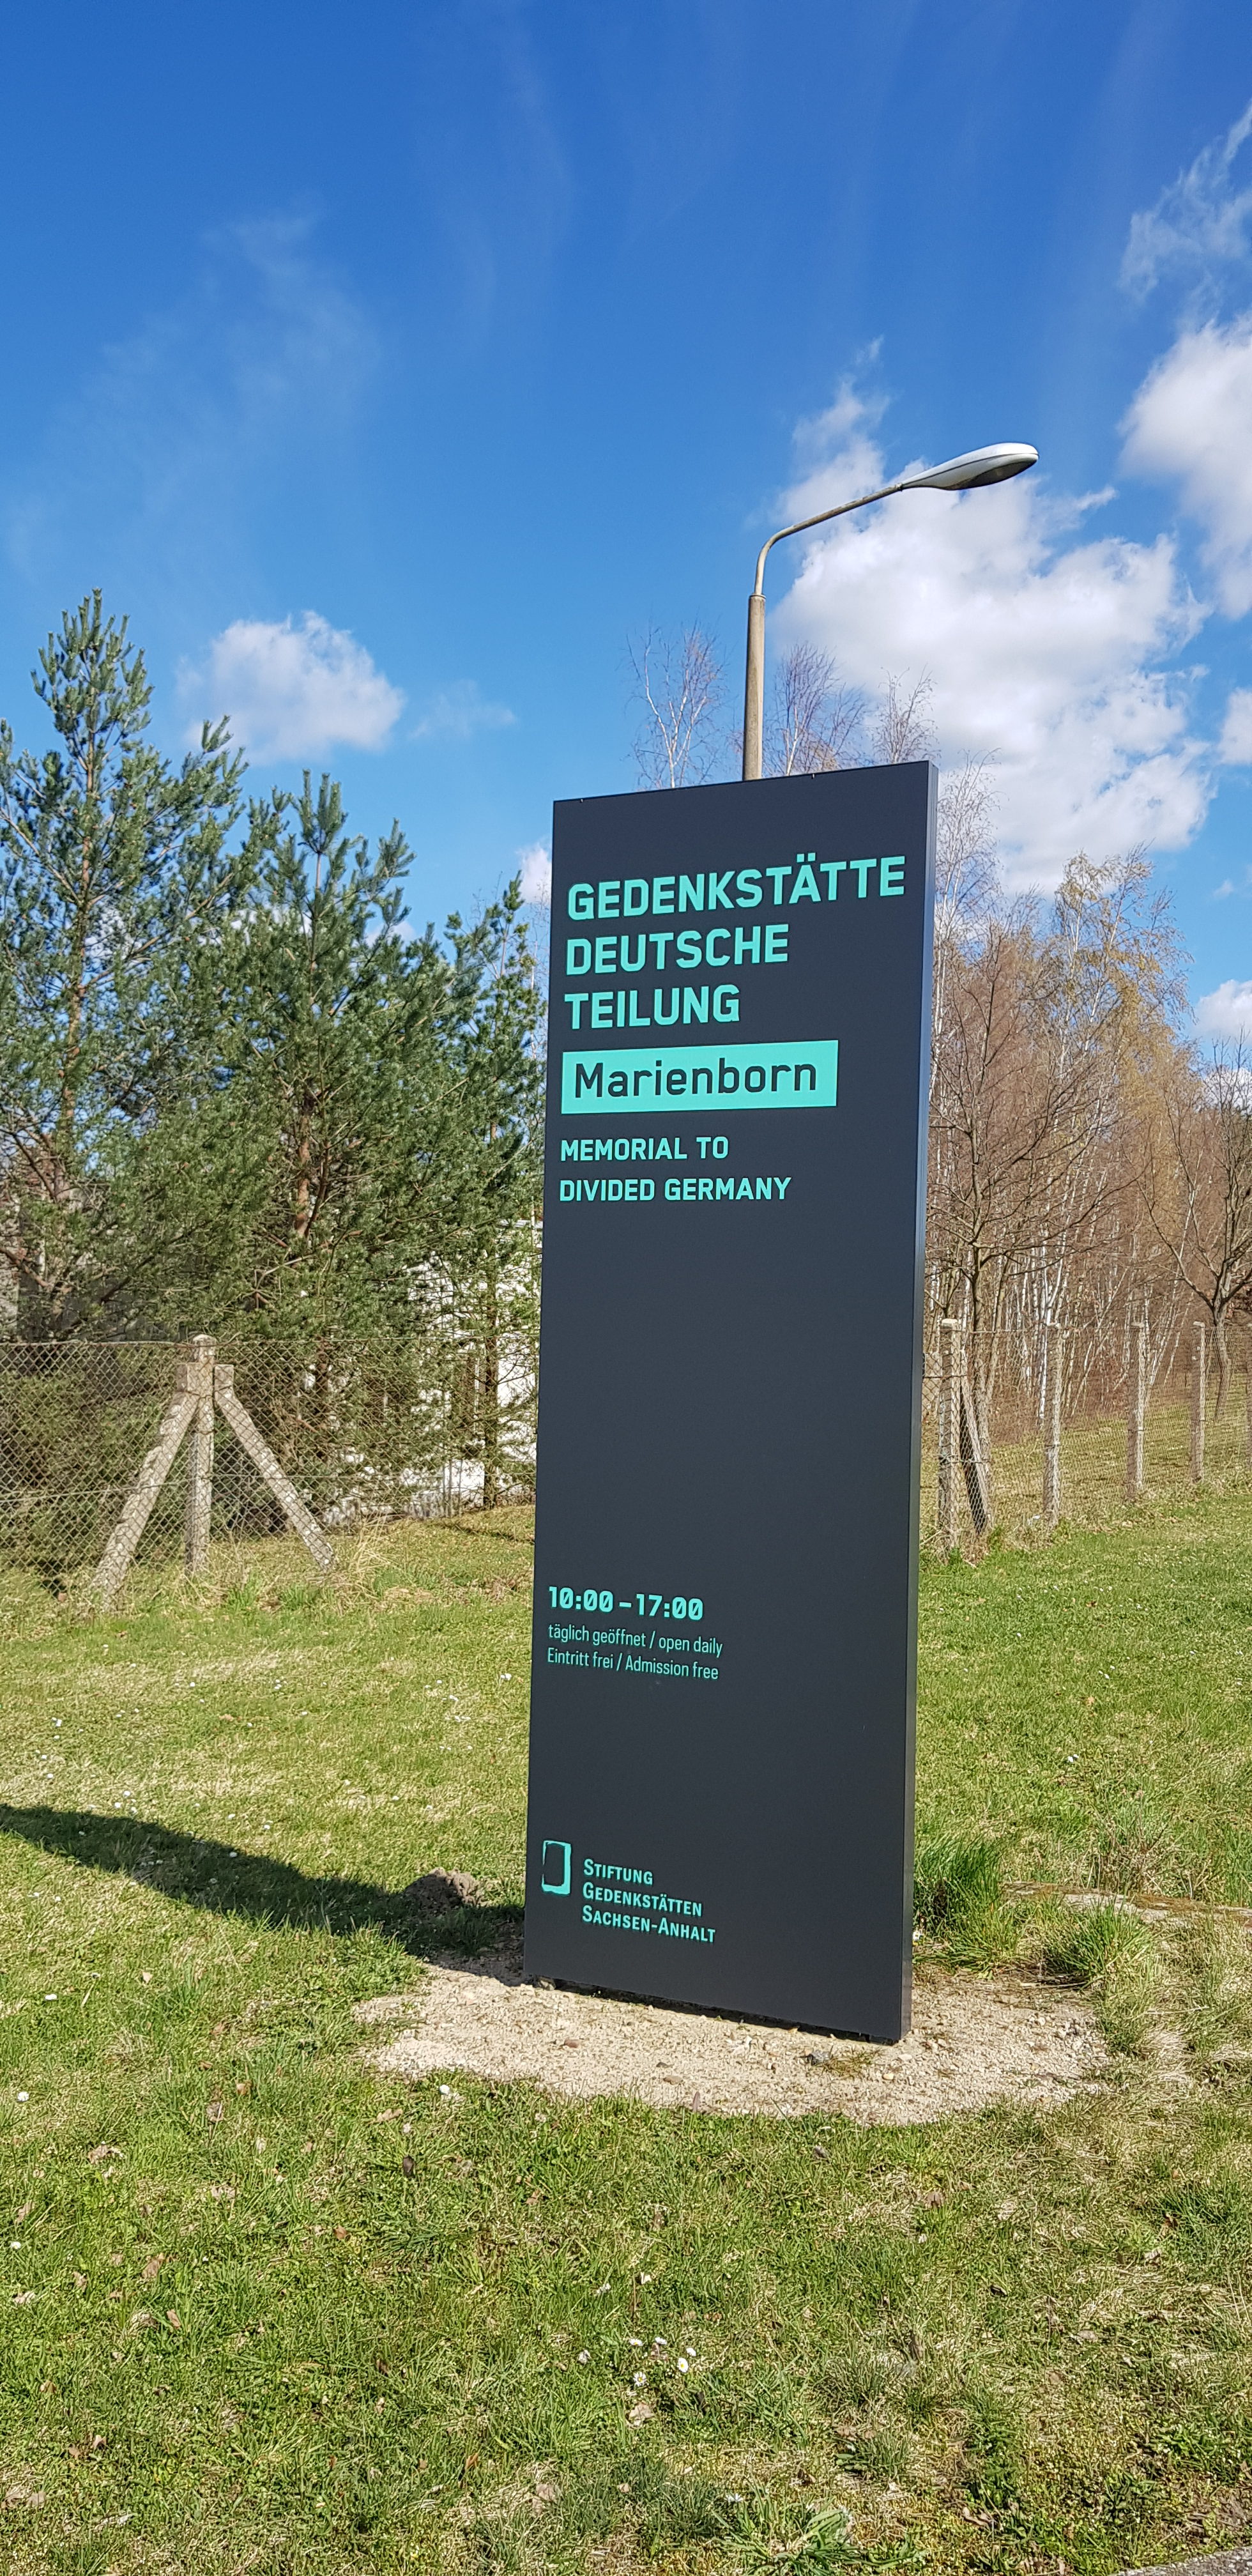 Gedenkstätte Deutsche Teilung Marienborn (Wird bei Klick vergrößert)